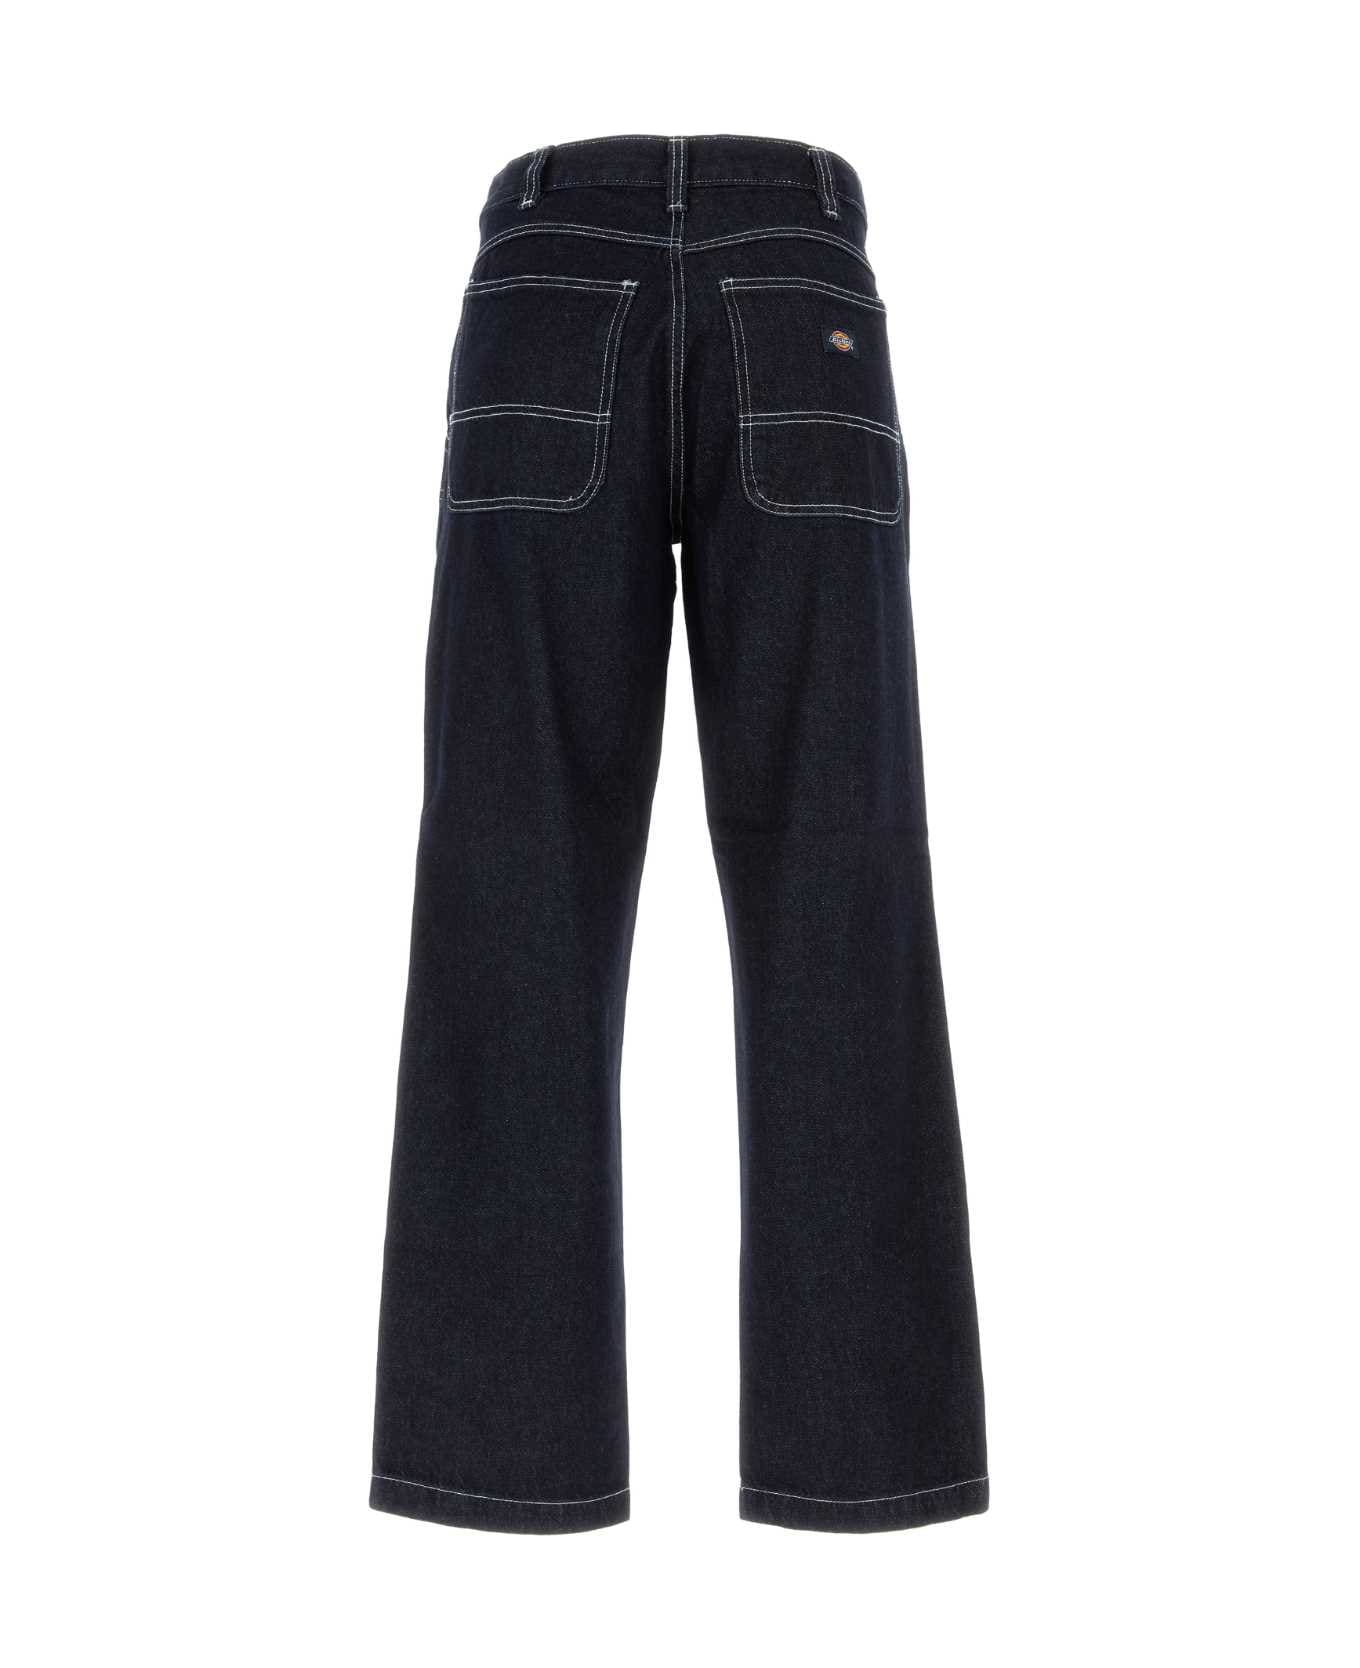 Dickies Dark Blue Denim Jeans - RINSED